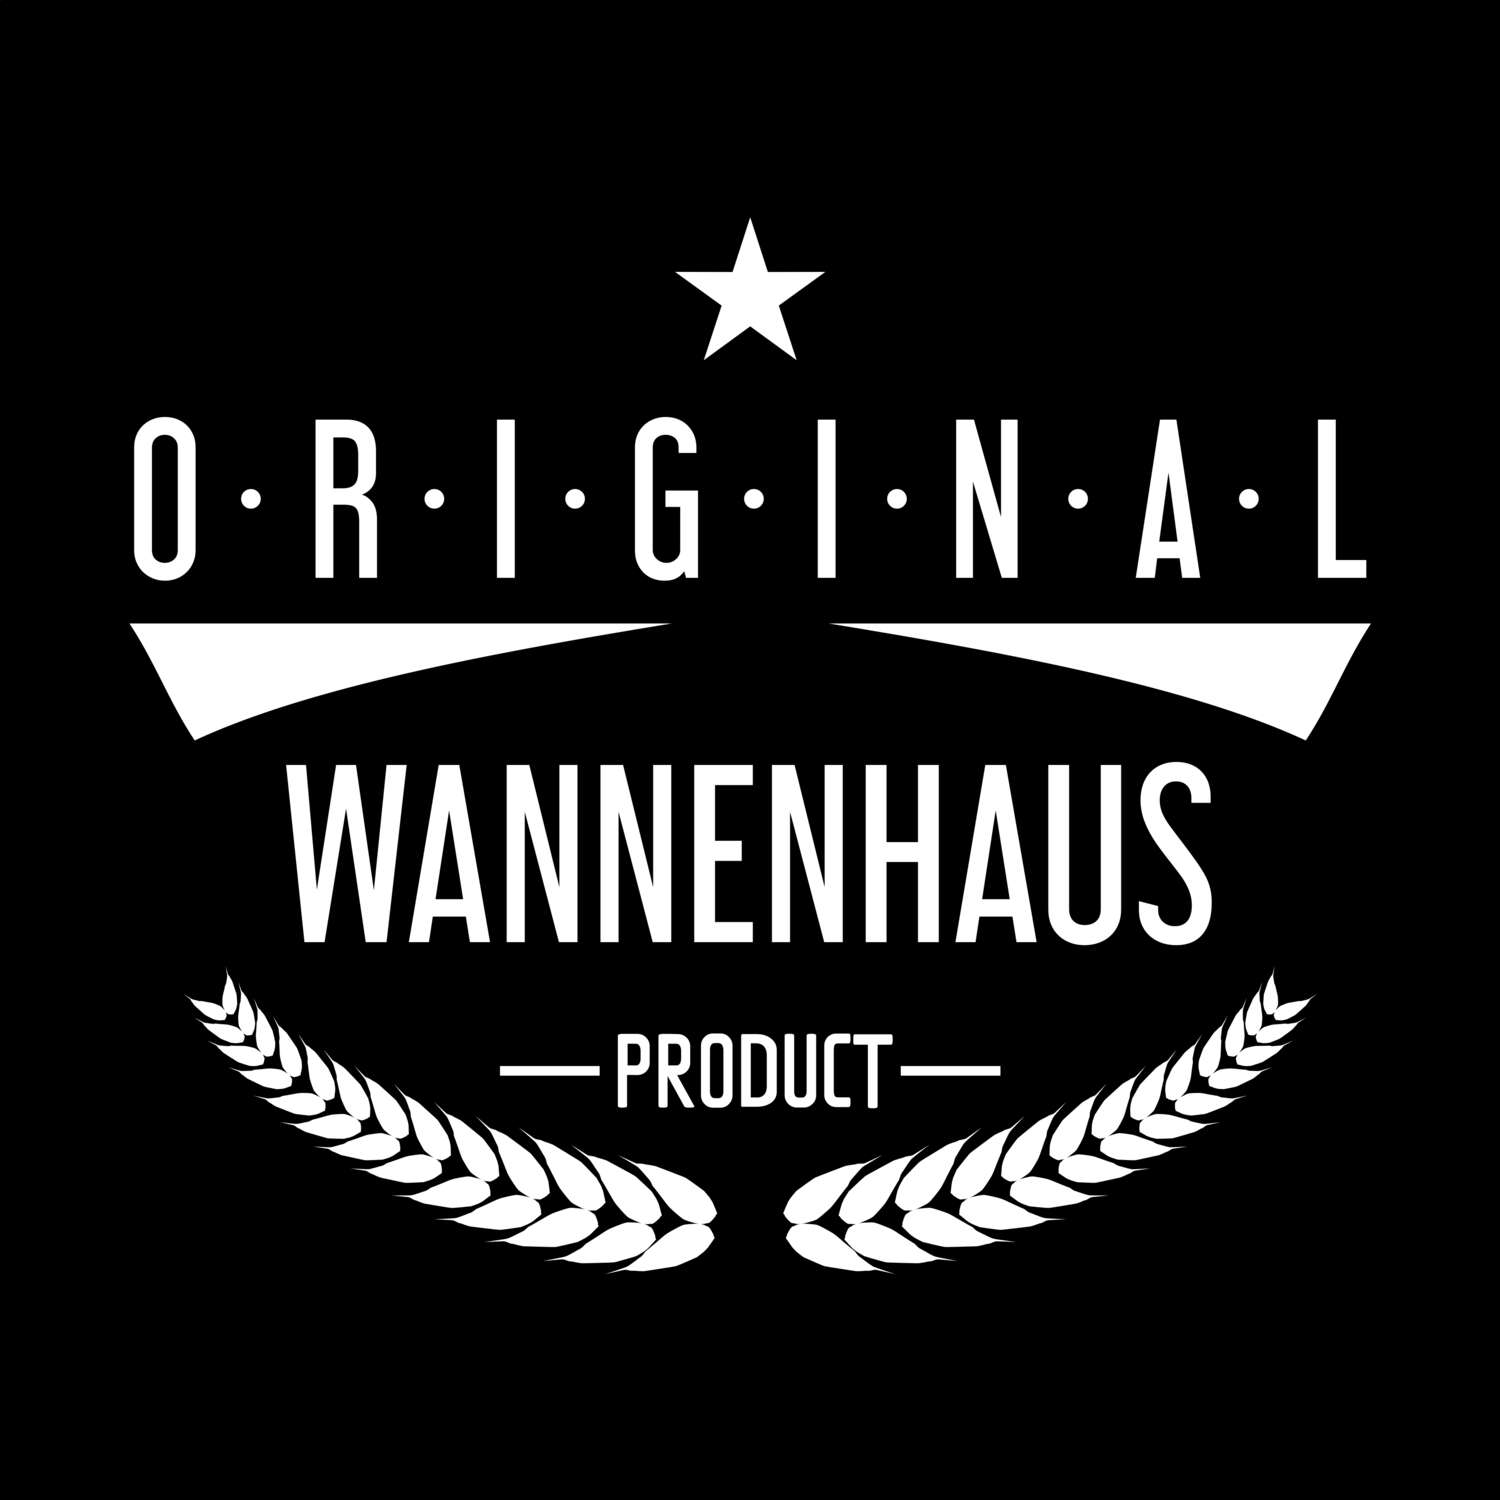 Wannenhaus T-Shirt »Original Product«